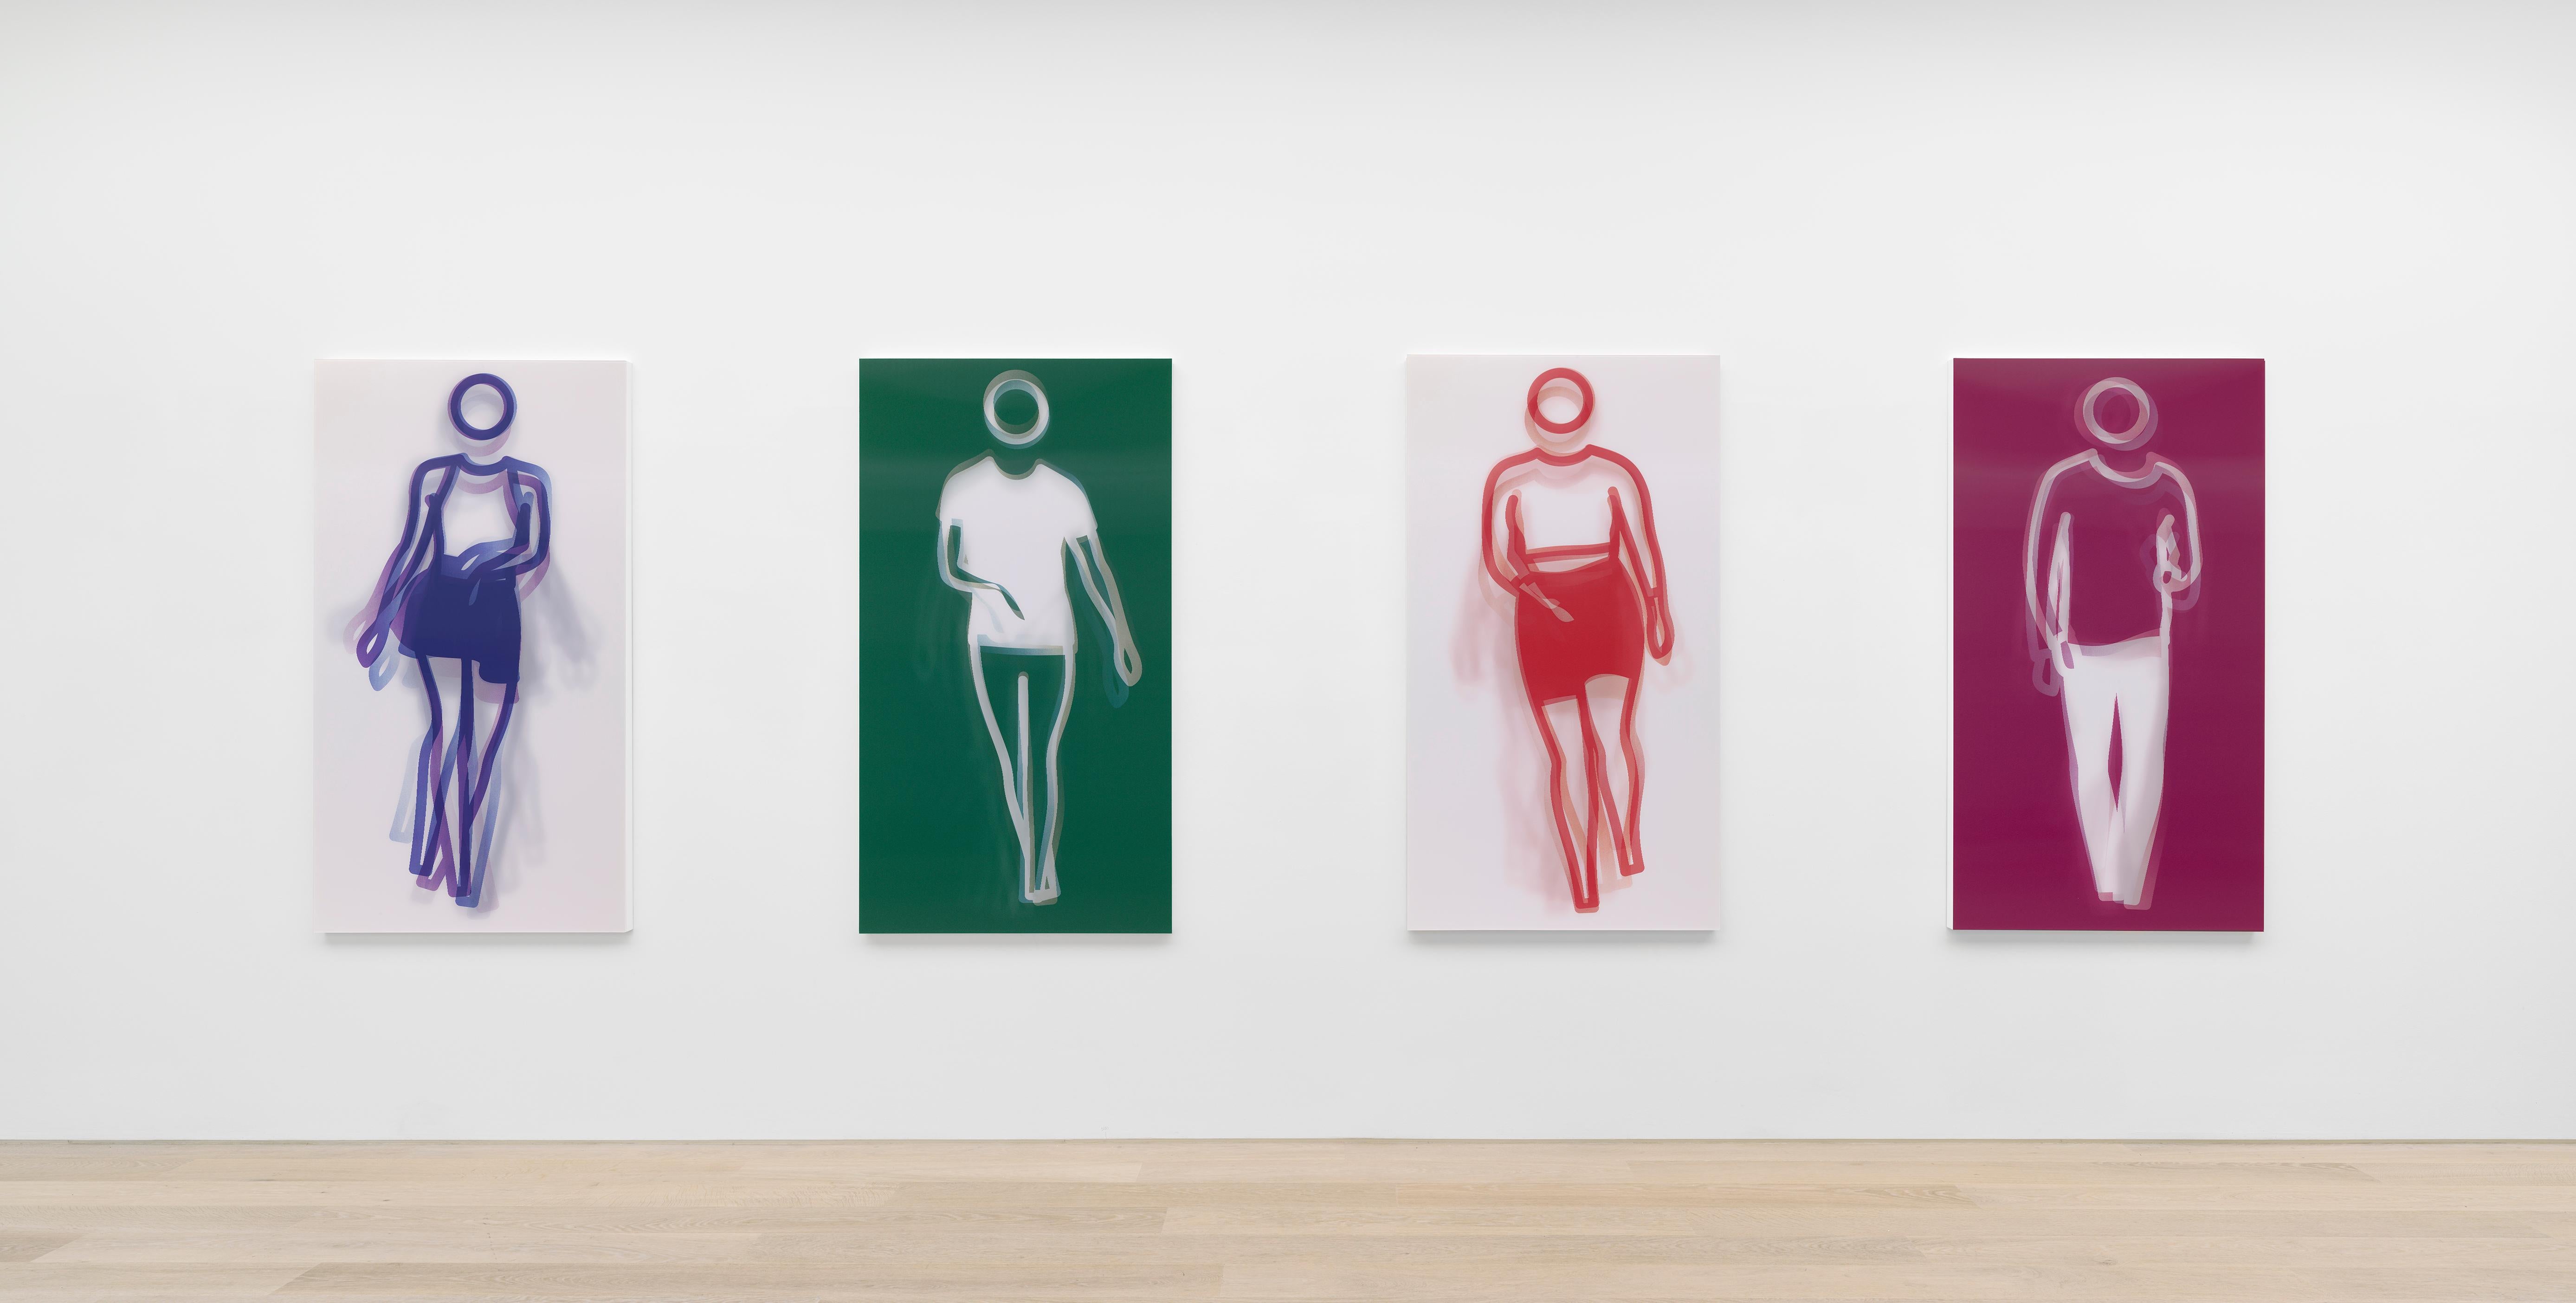 Moving Large Contemporary Acrylic Panel of Dancing Figure, Four Colors, Dance 3 (panneau acrylique contemporain de grande taille représentant une figure dansante) - Print de Julian Opie